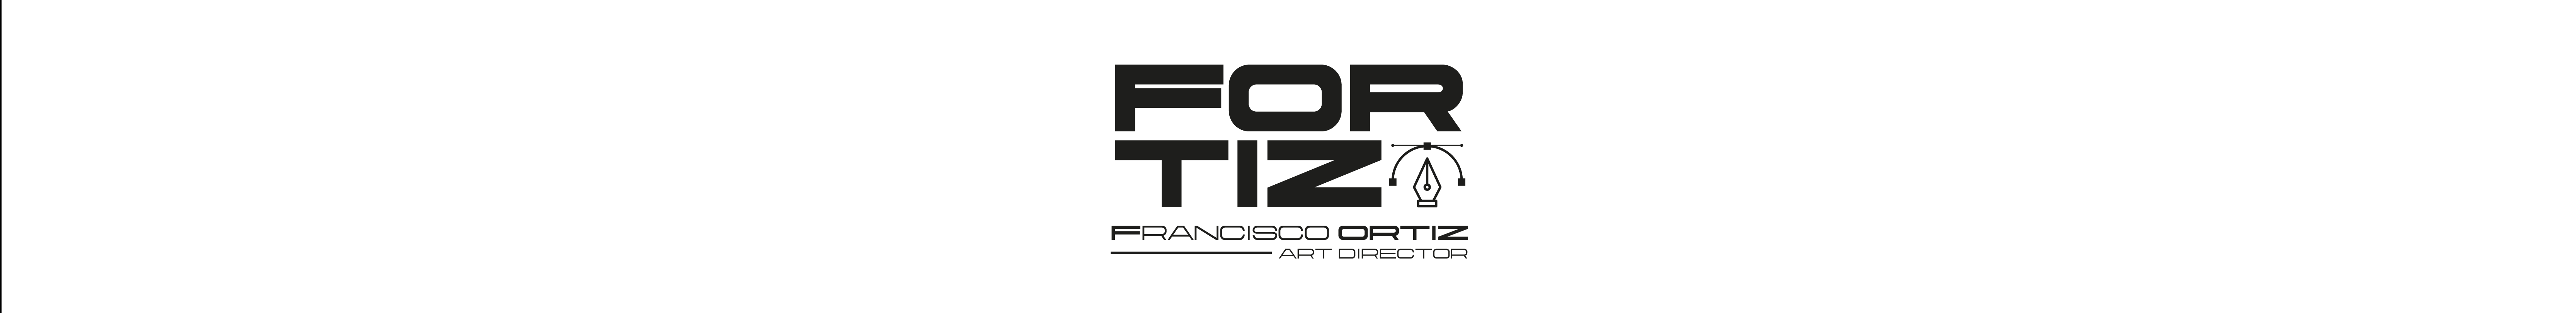 Francisco Ortizs profilbanner